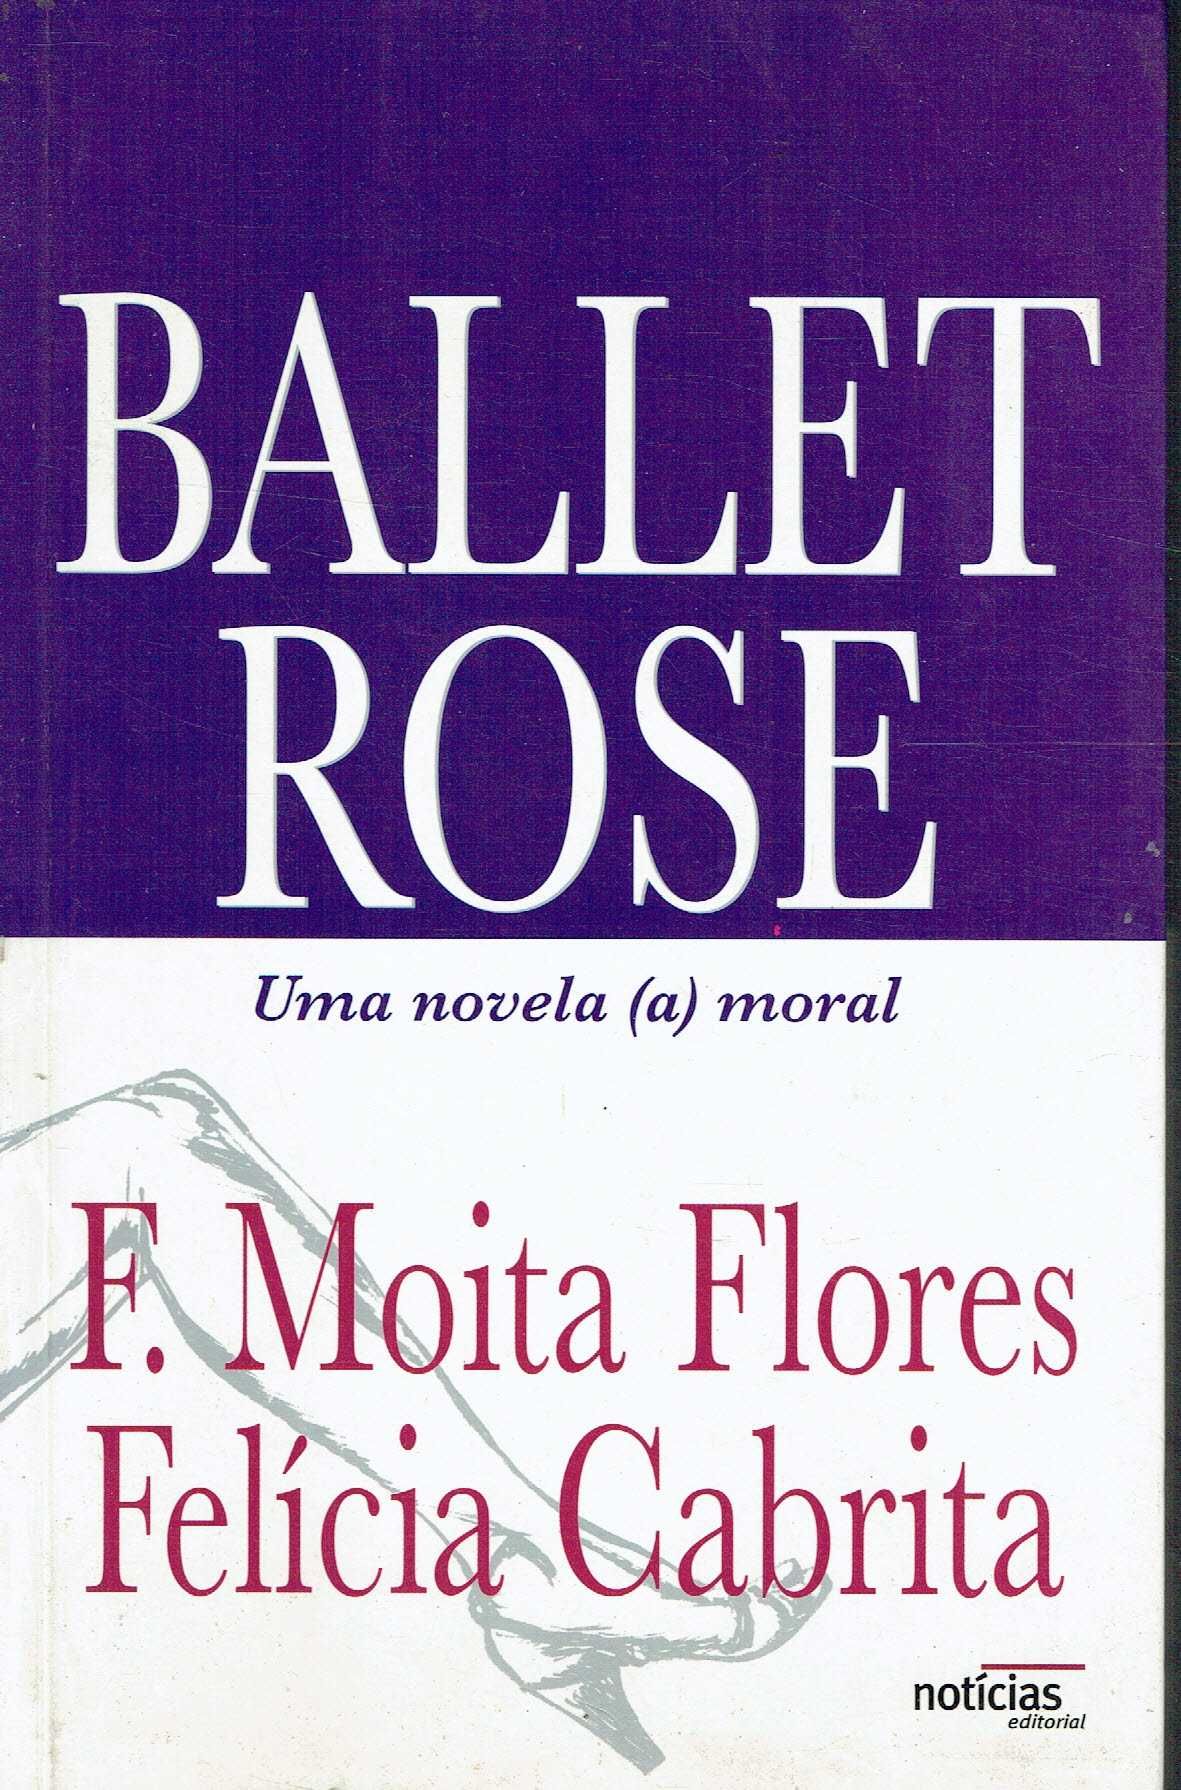 3454

Ballet Rose
de Felícia Cabrita e Francisco Moita Flores